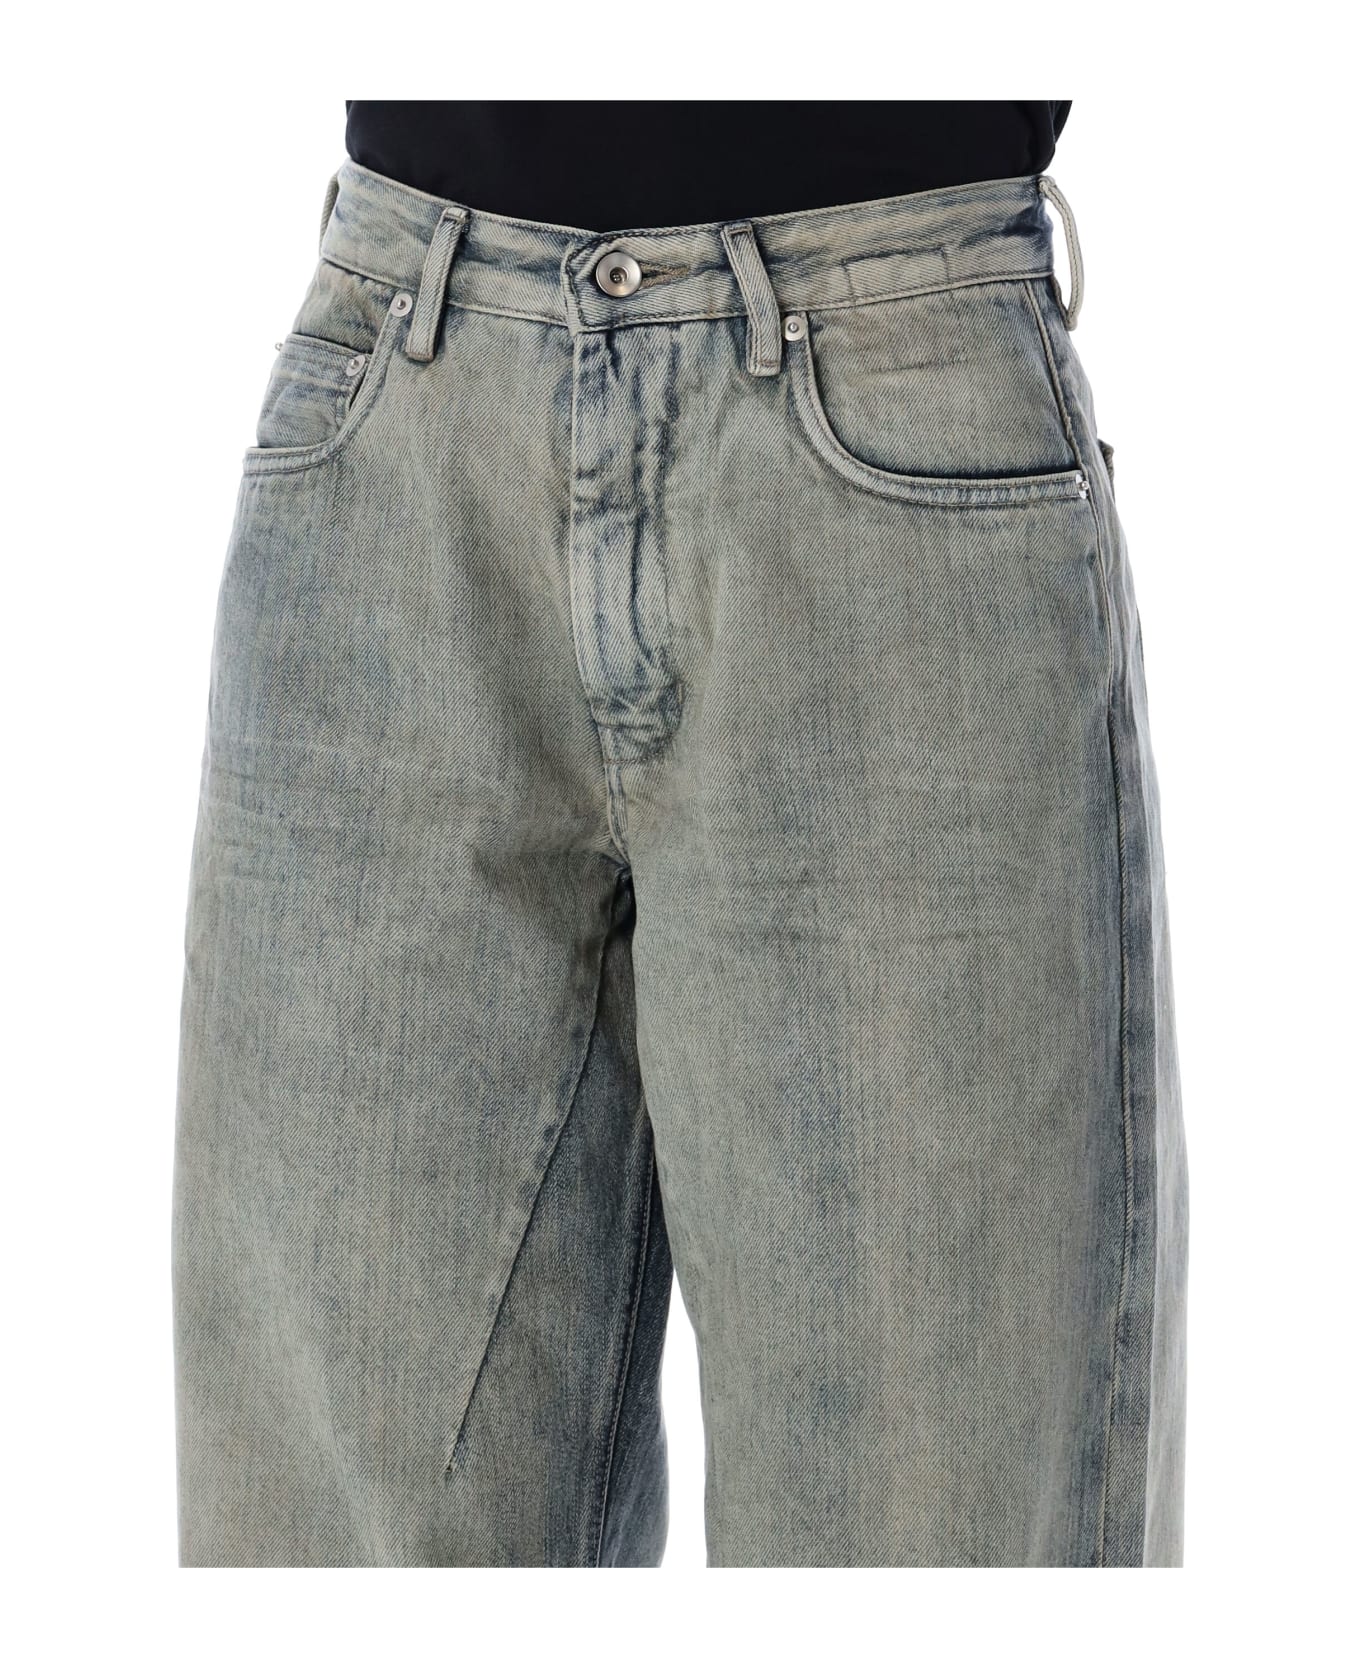 DRKSHDW Geth Jeans - SKY デニム